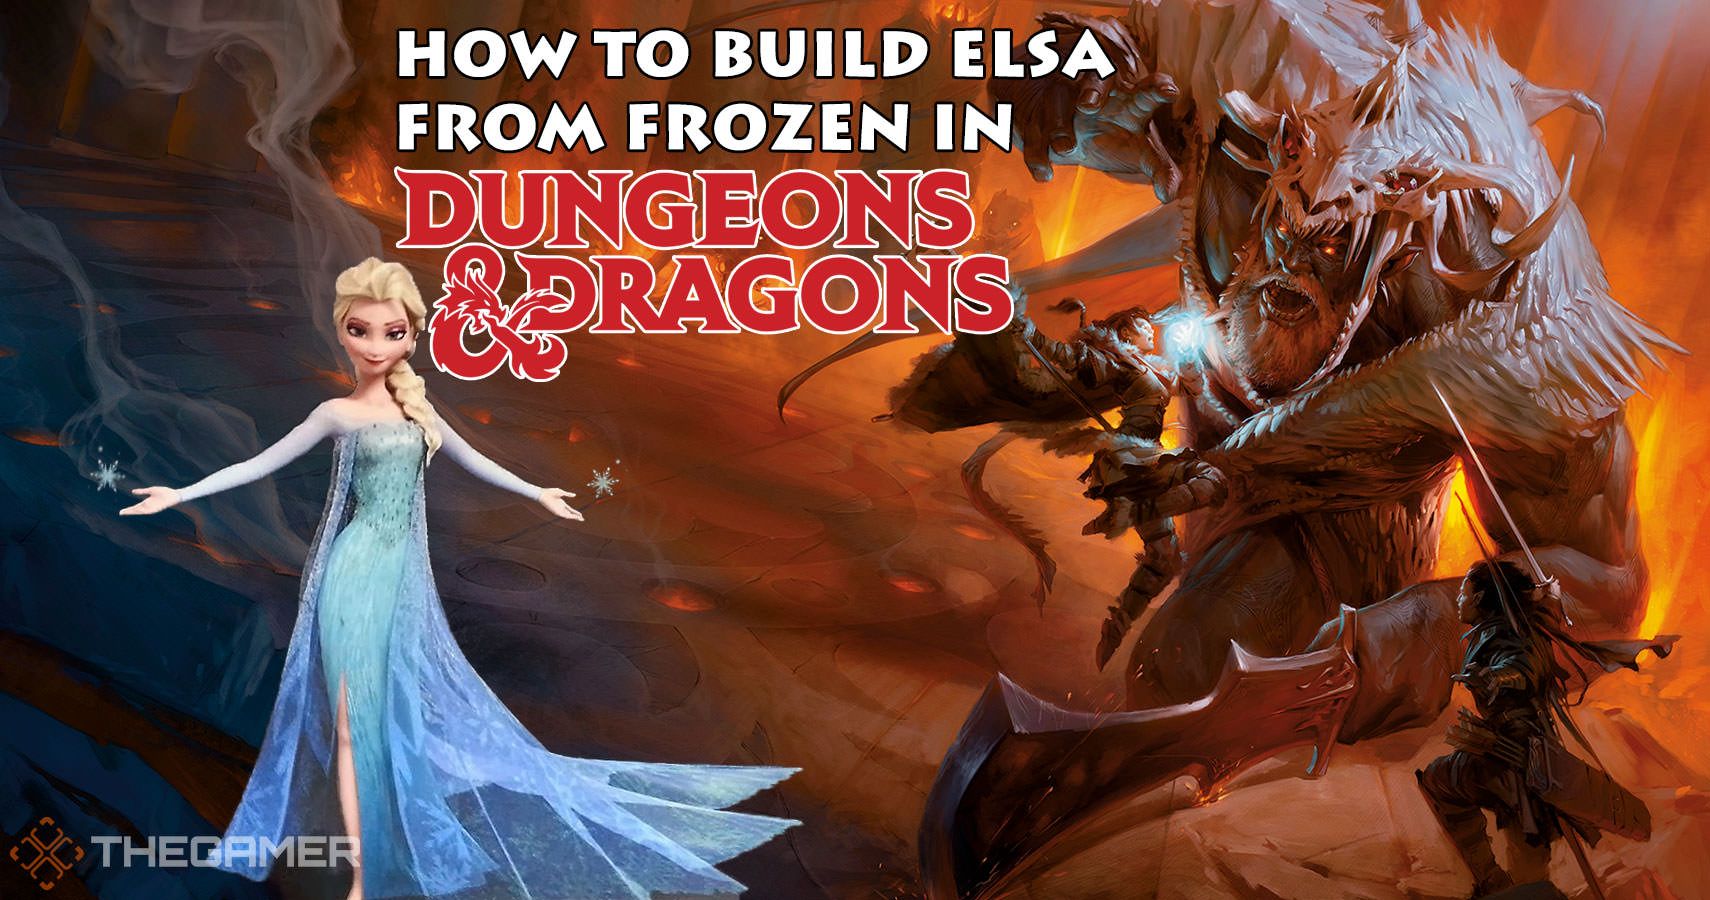 How To Build Frozen's Elsa In Dungeons & Dragons